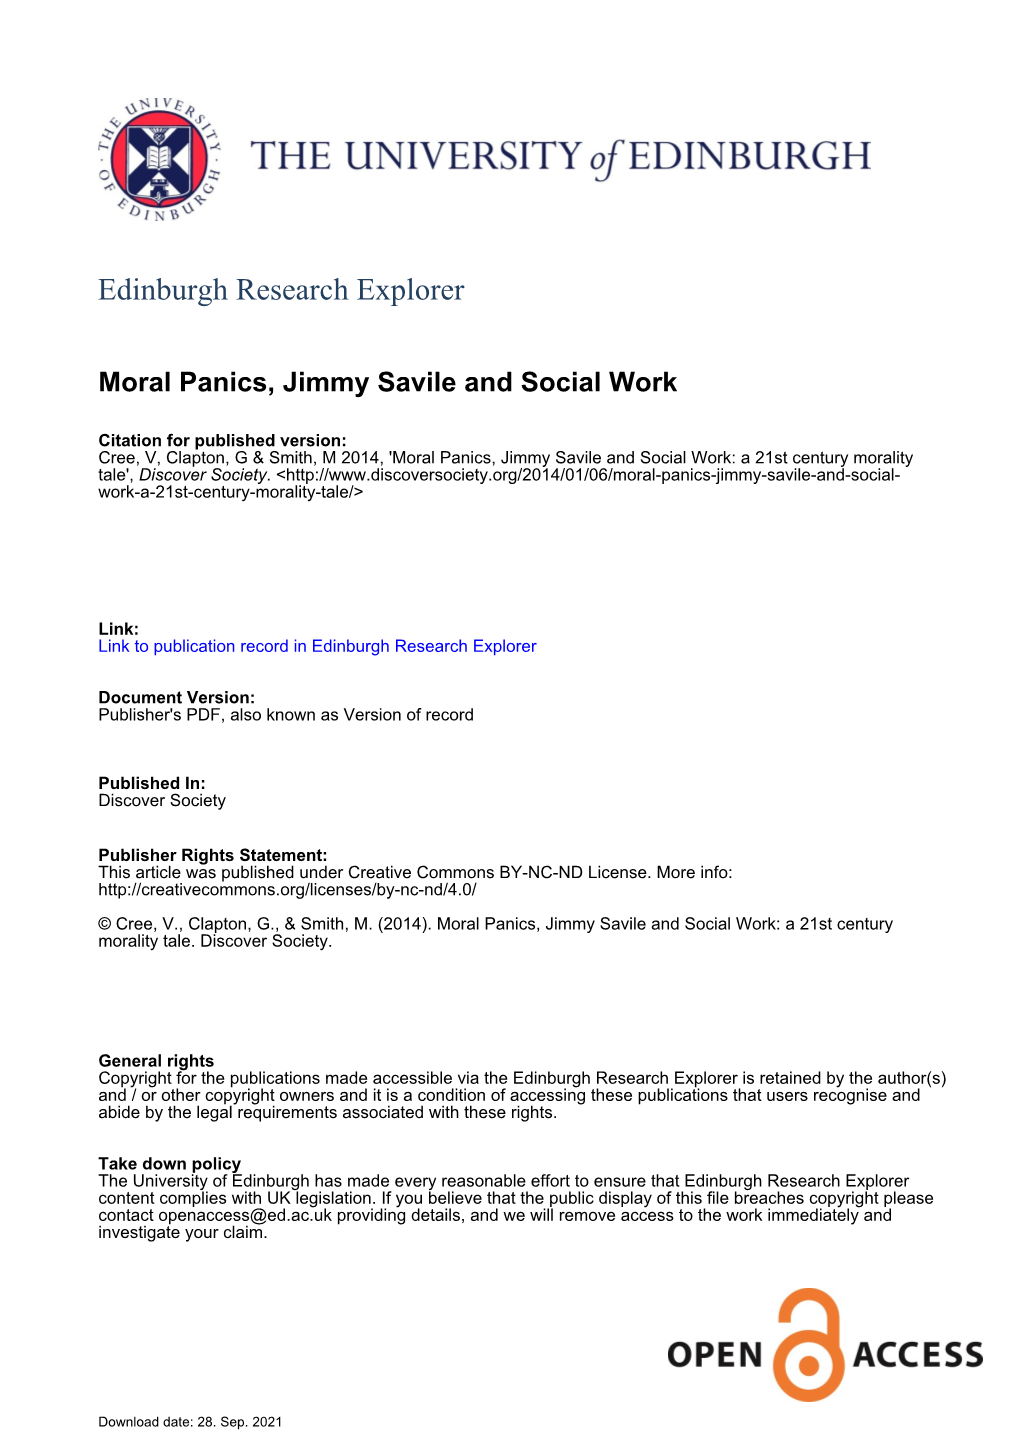 Moral Panics, Jimmy Savile and Social Work